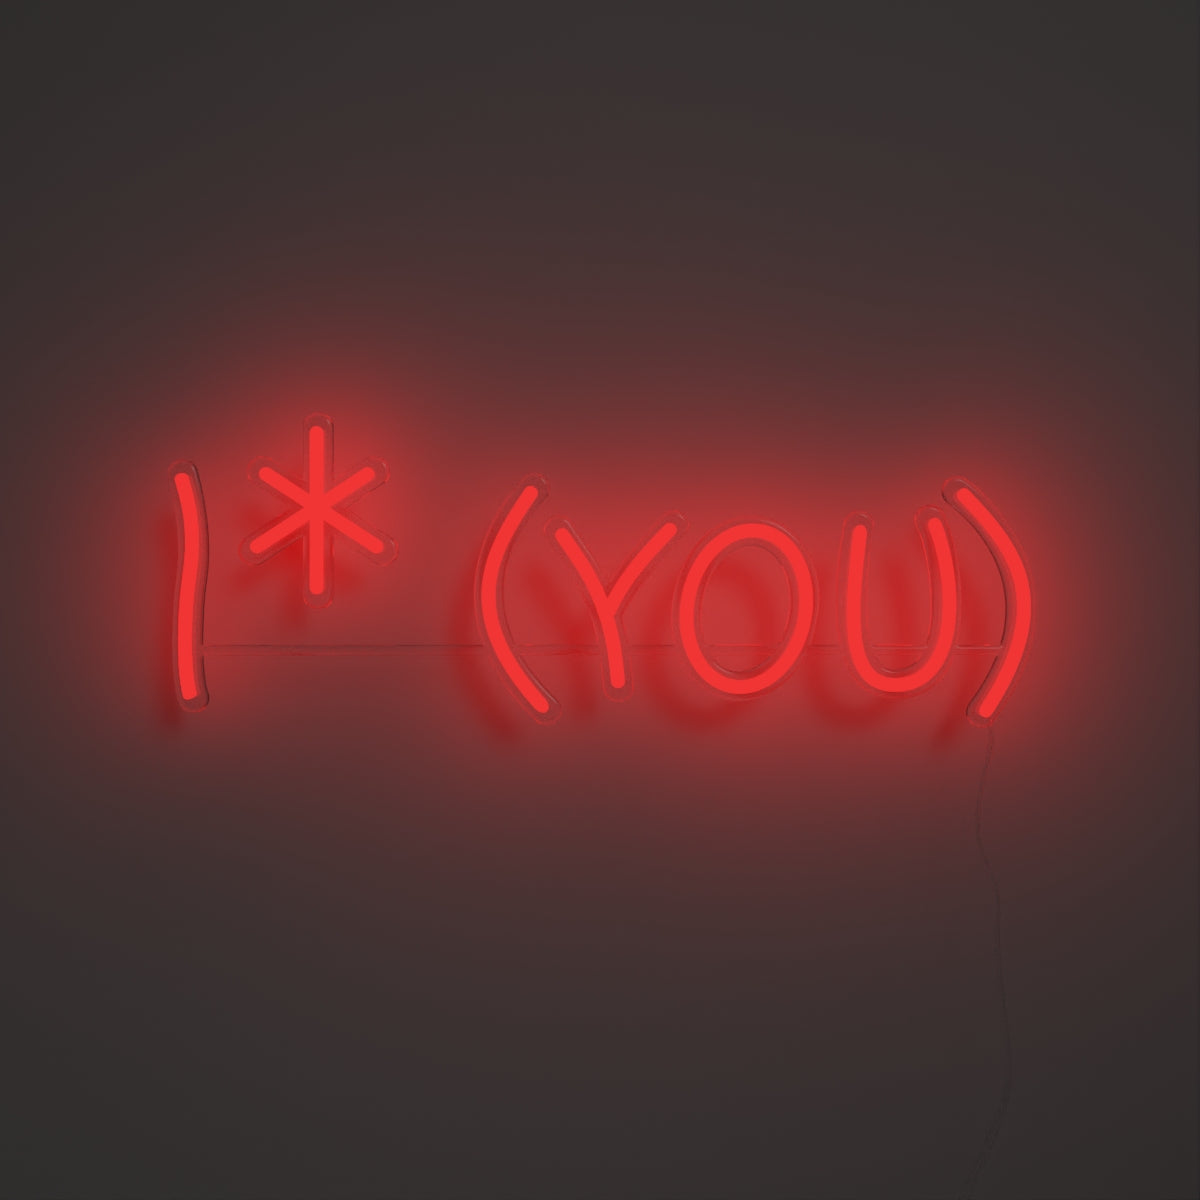 I * You, Neon Tabela - Neonbir